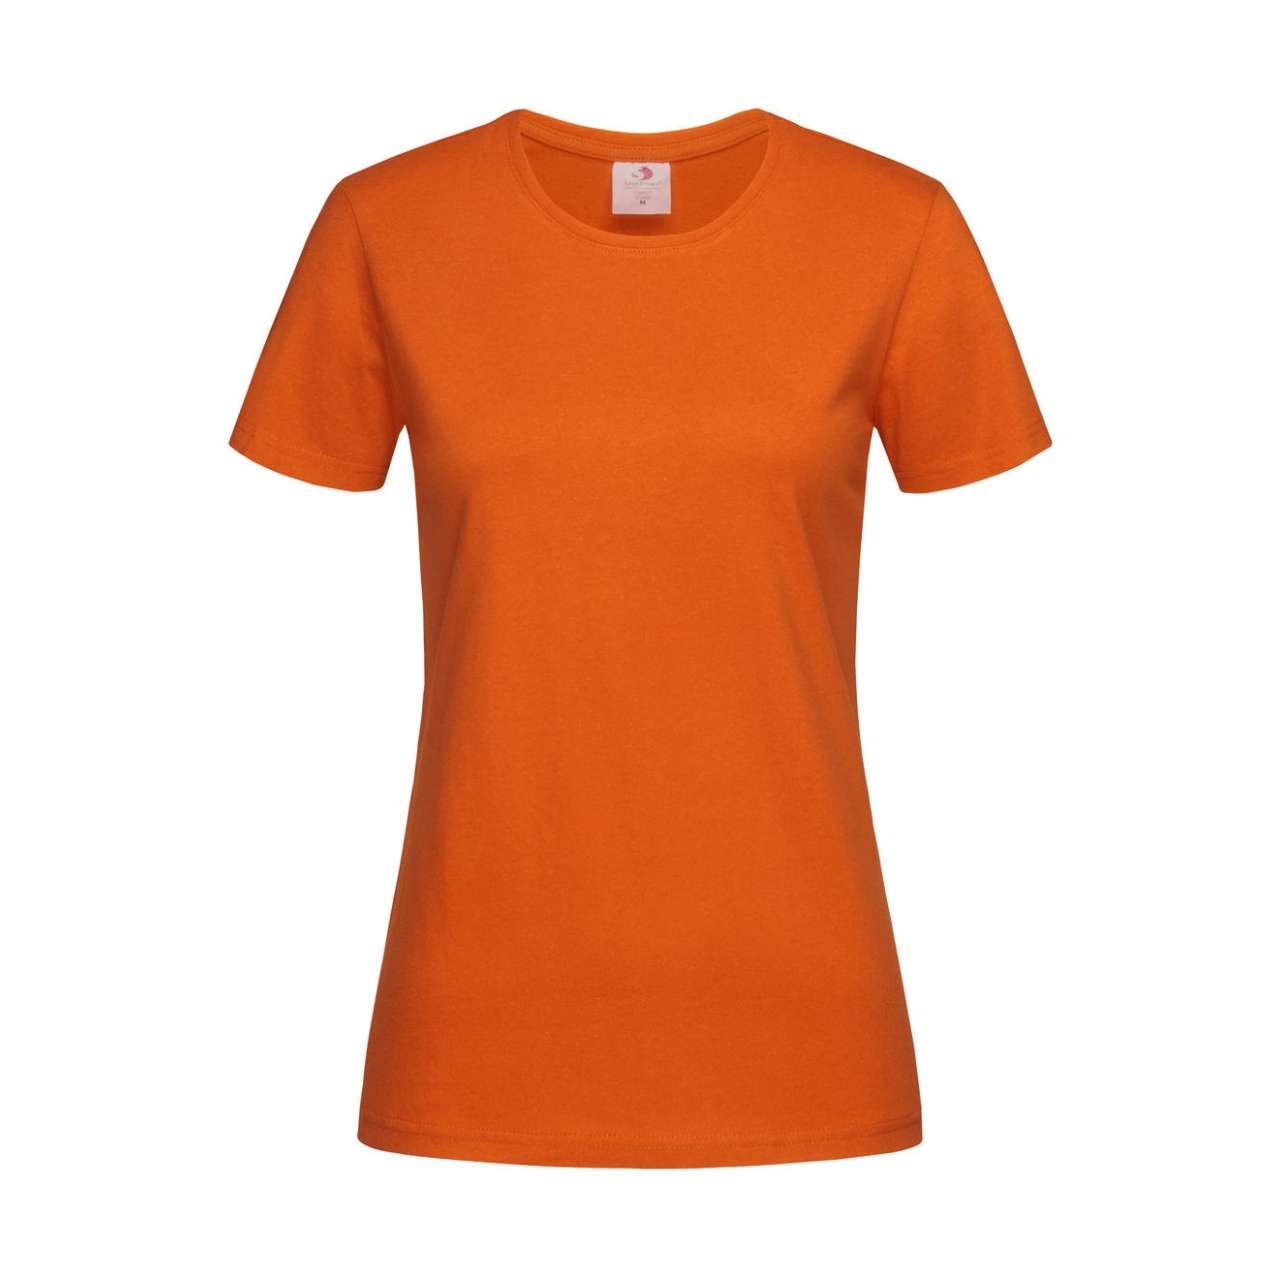 Tričko dámské Stedman Fitted s kulatým výstřihem - oranžové